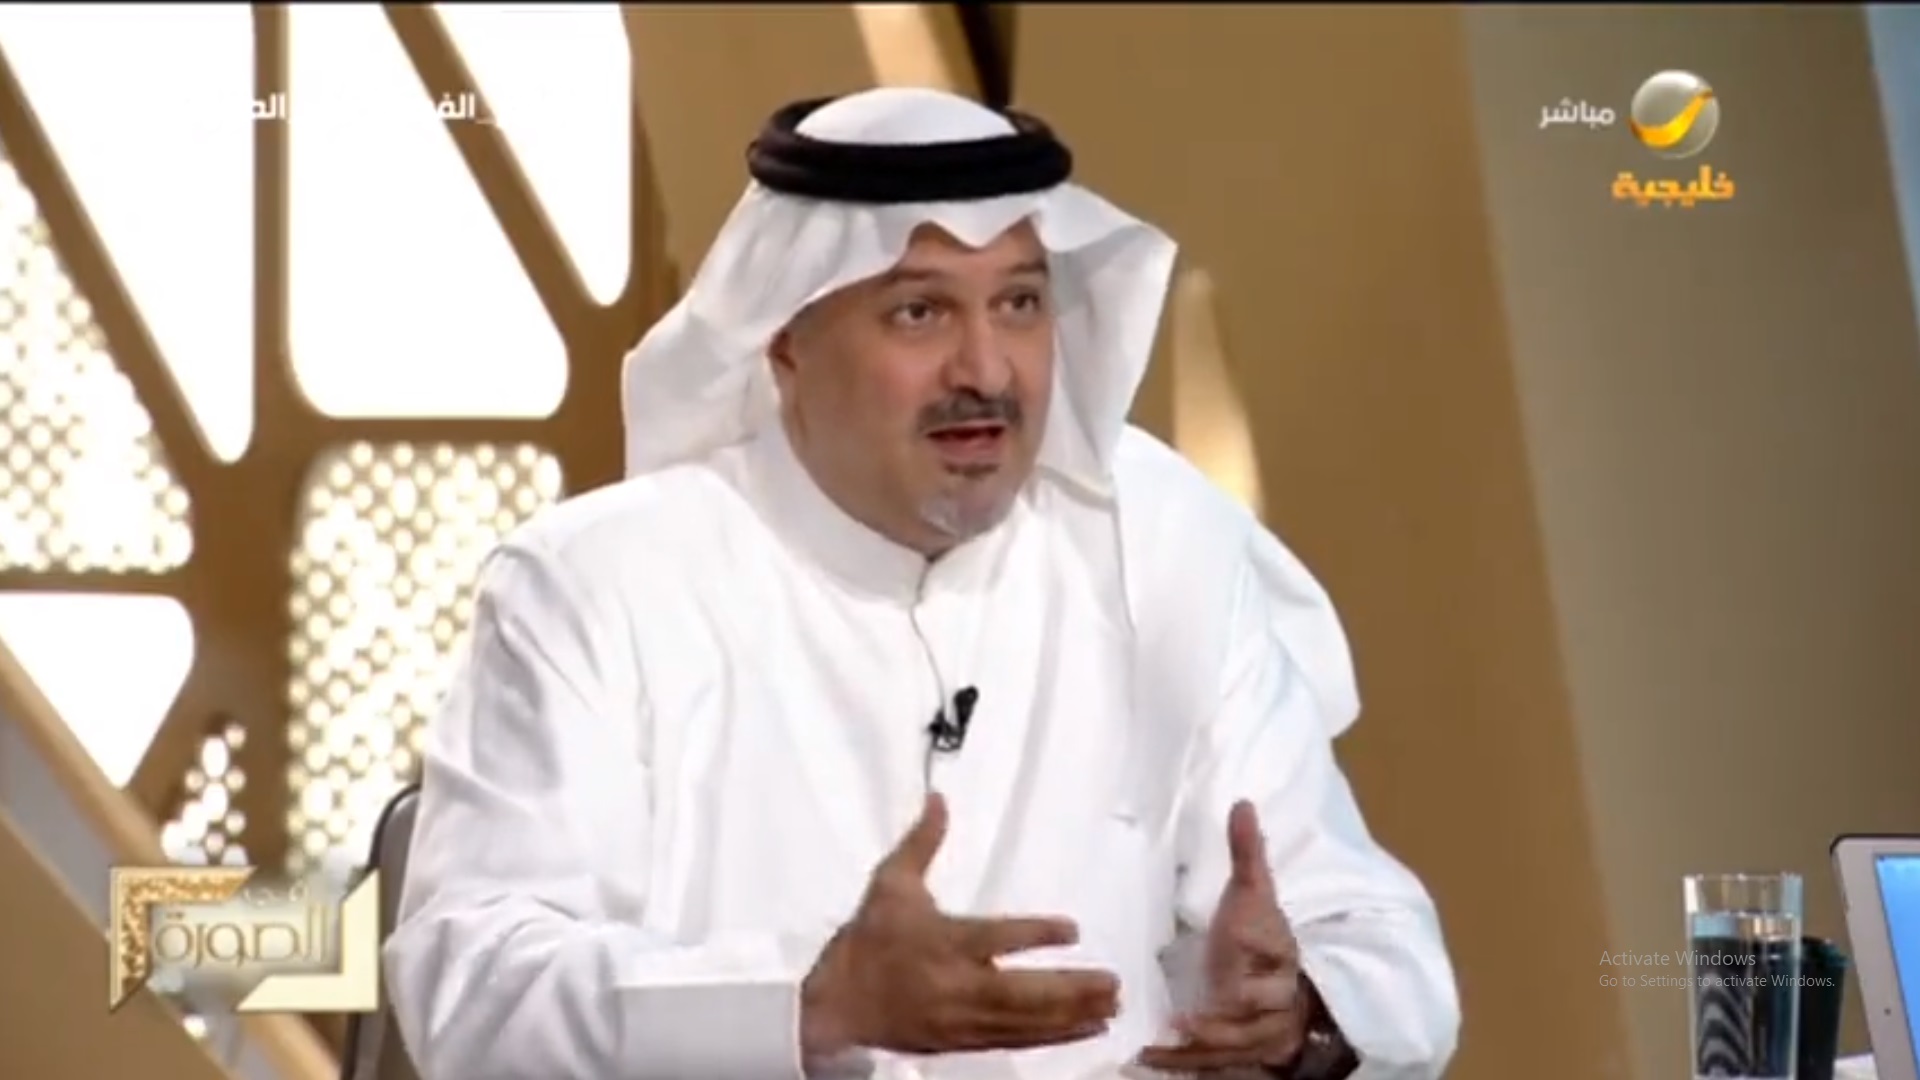 بندر الفيصل: تحليل كورونا وراء عدم تواجدي بالمنصة في كأس السعودية